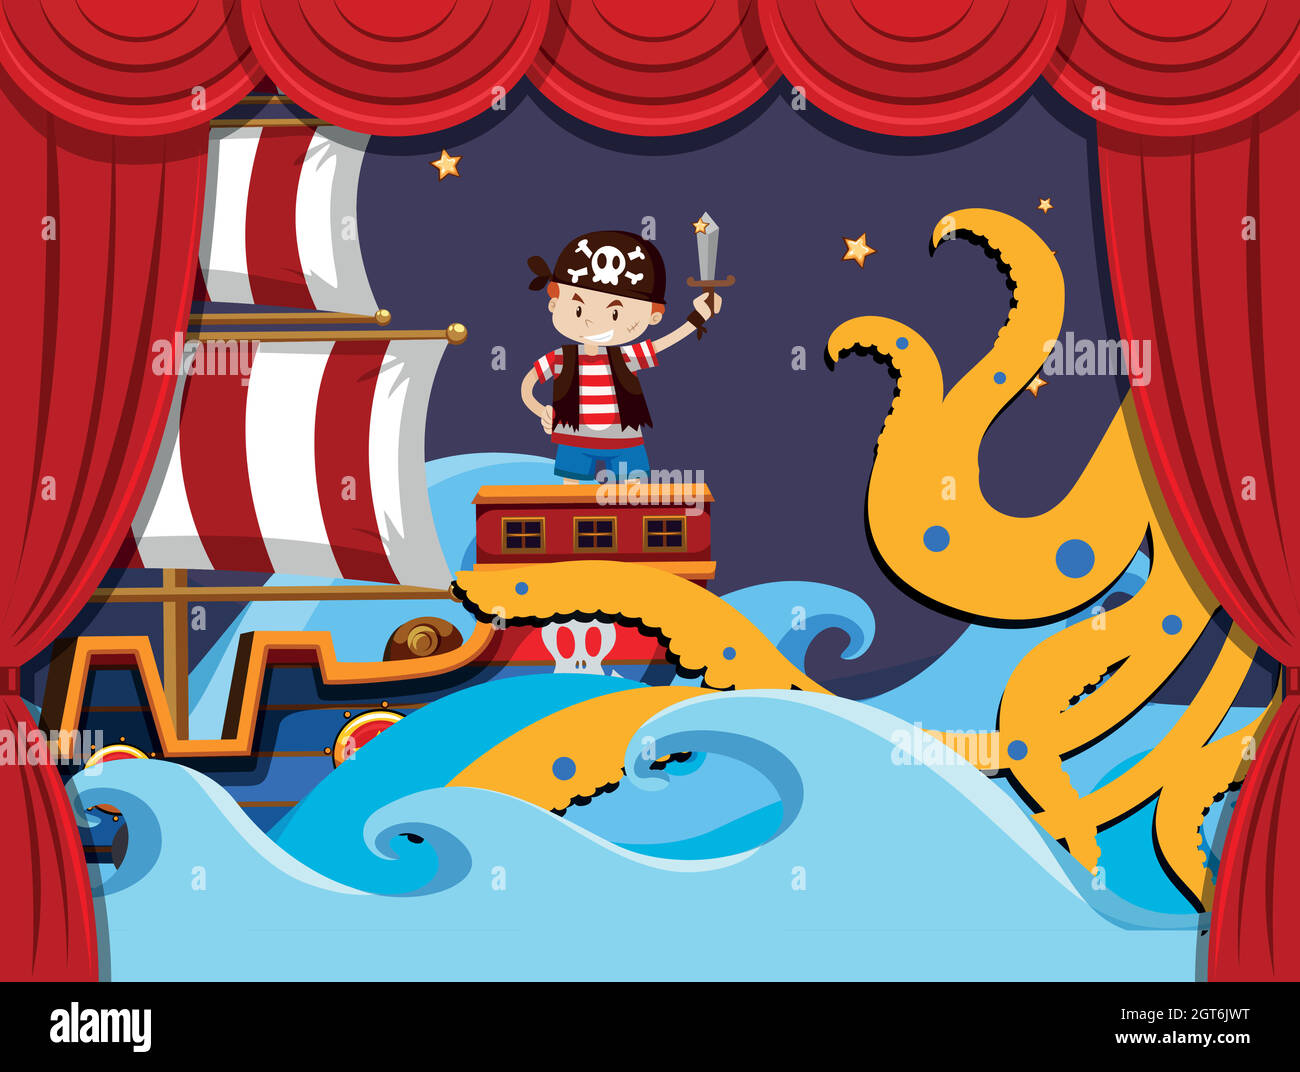 Jouer sur scène avec le pirate combattant kraken Illustration de Vecteur